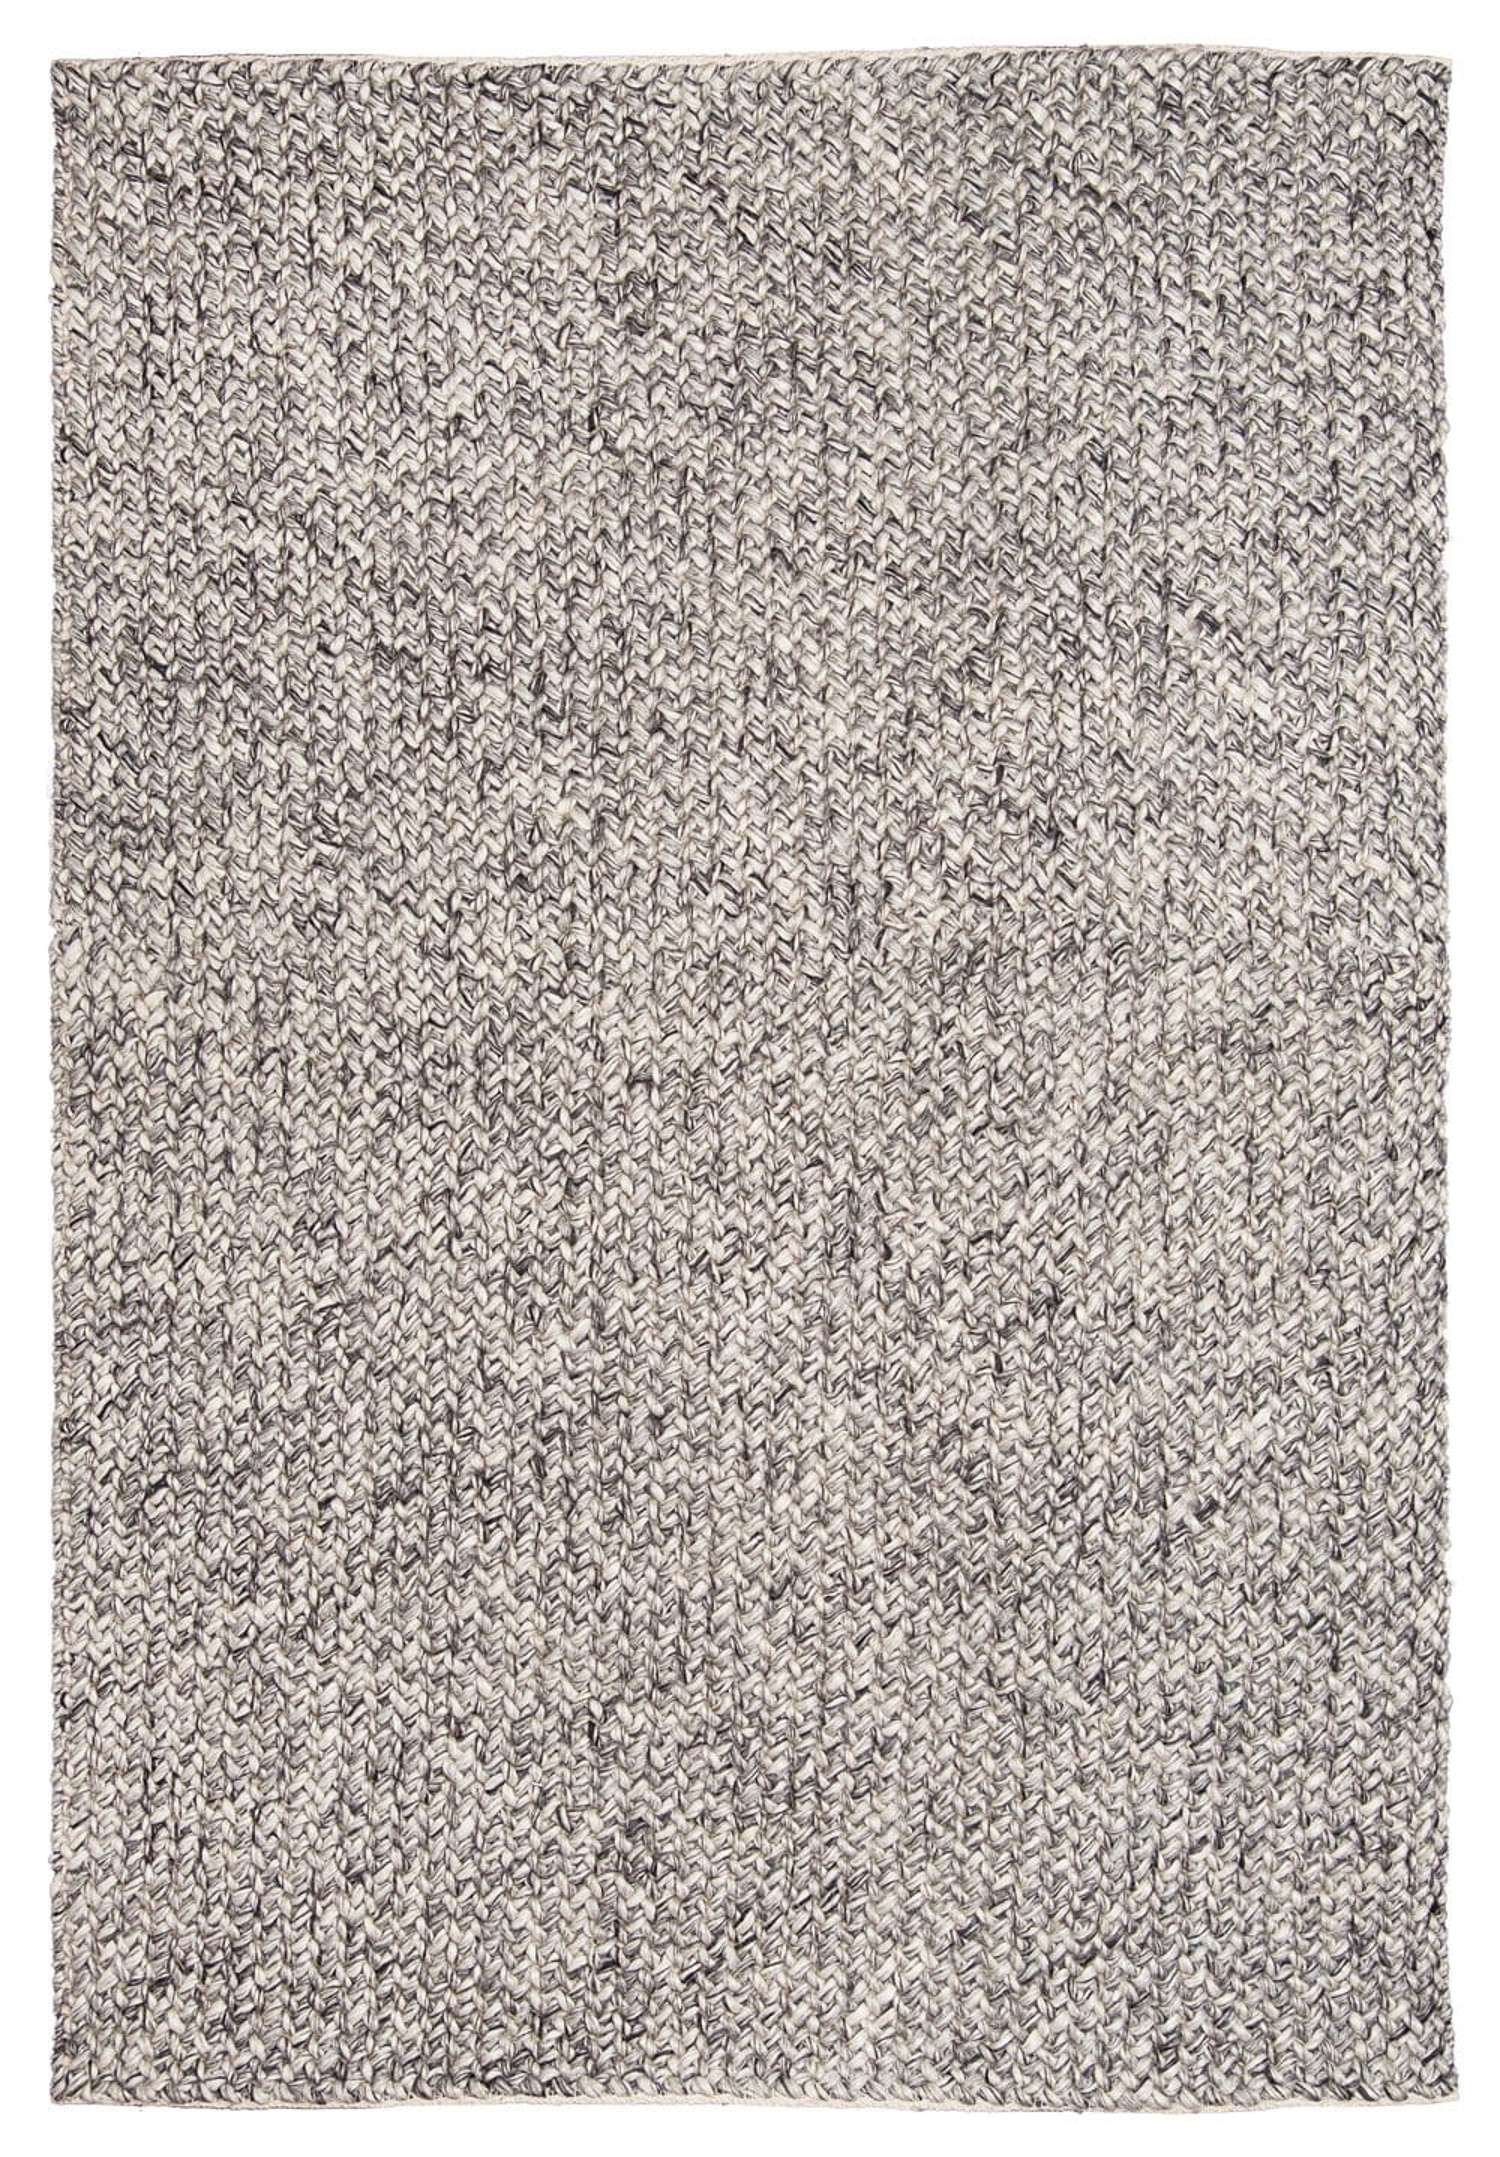 https://assets.wfcdn.com/im/52711783/compr-r85/2534/253471106/minervia-handmade-hand-braided-wool-rug.jpg